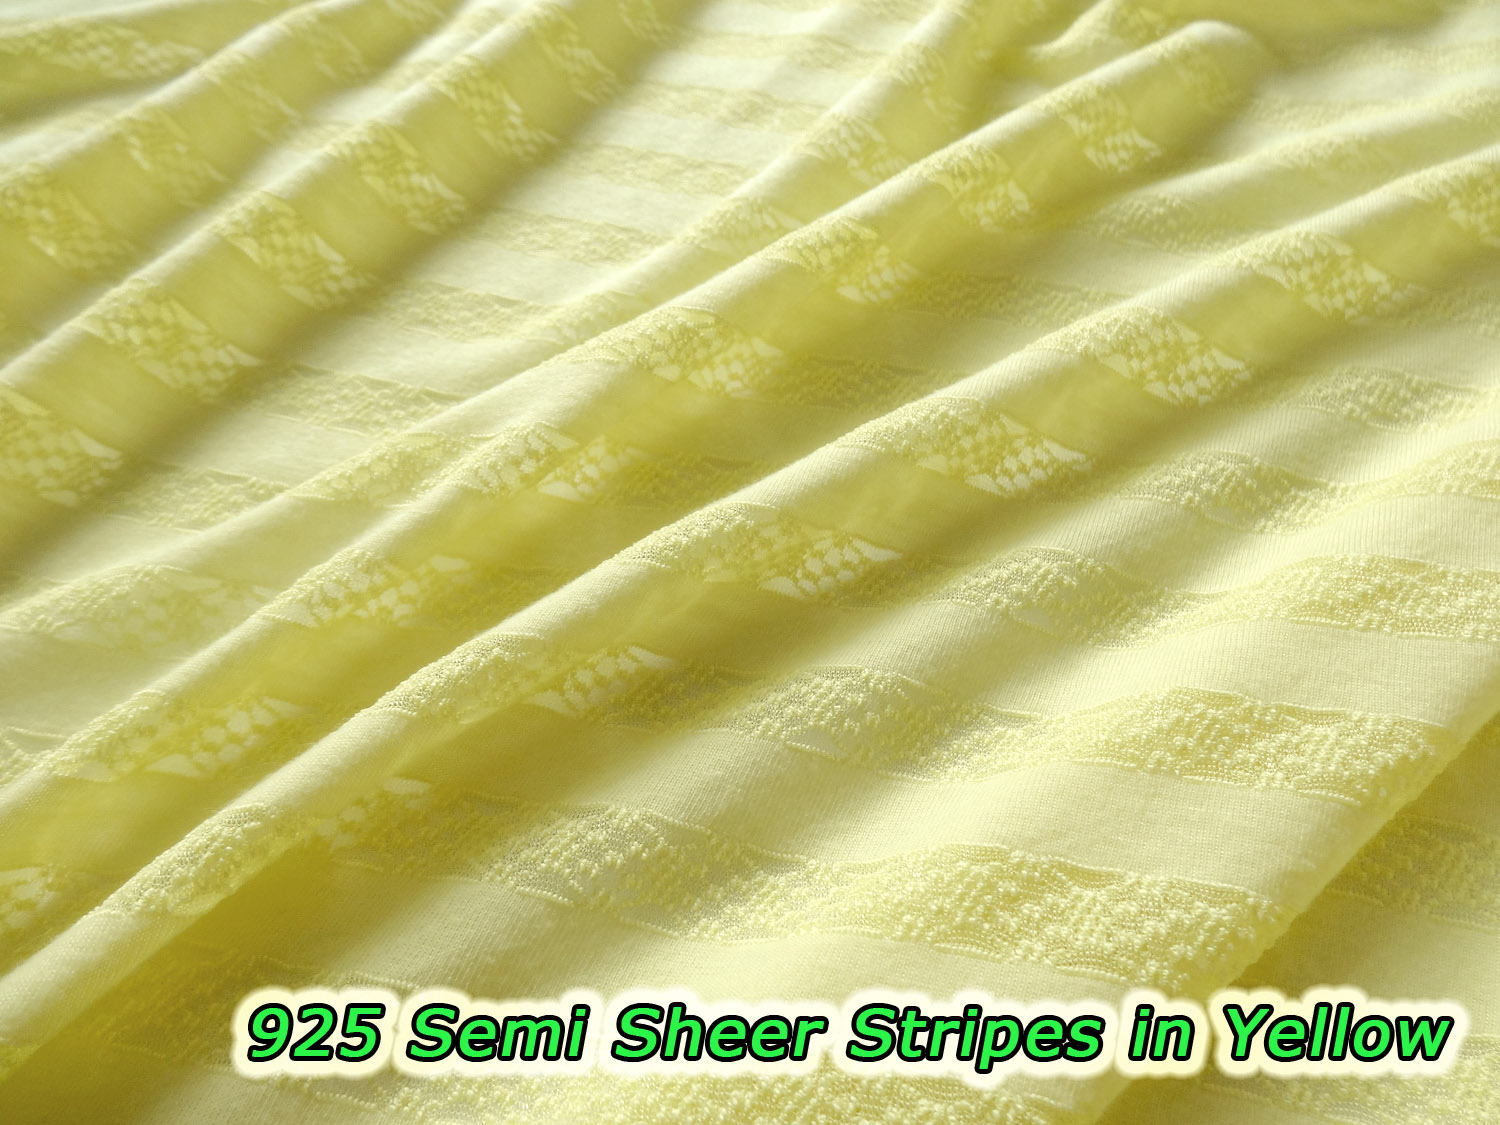 925 Semi Sheer Stripes in Yellow